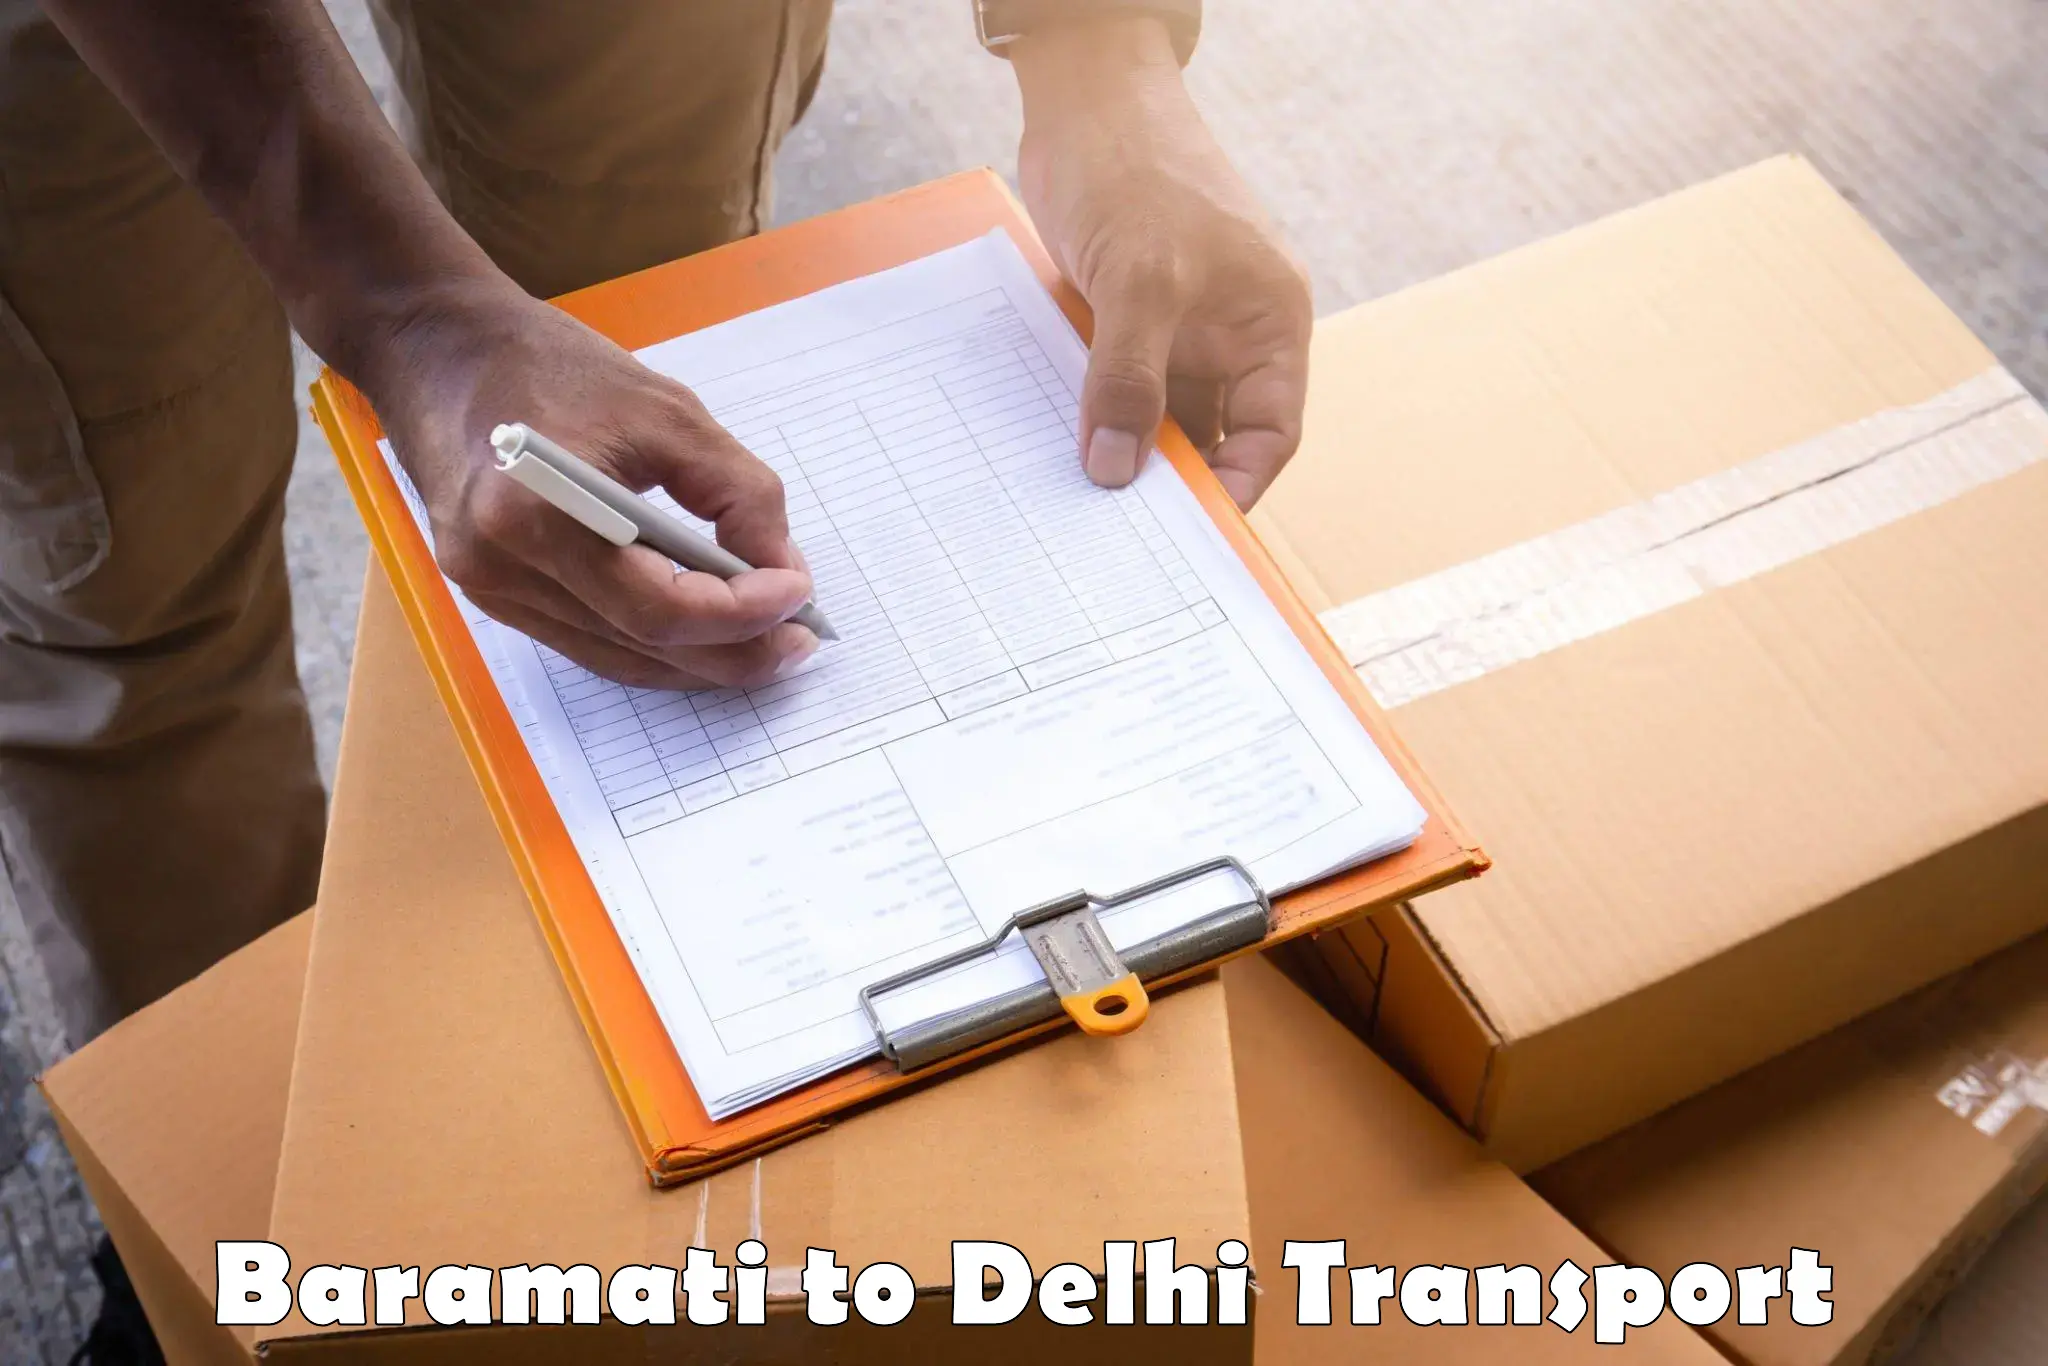 All India transport service Baramati to Delhi